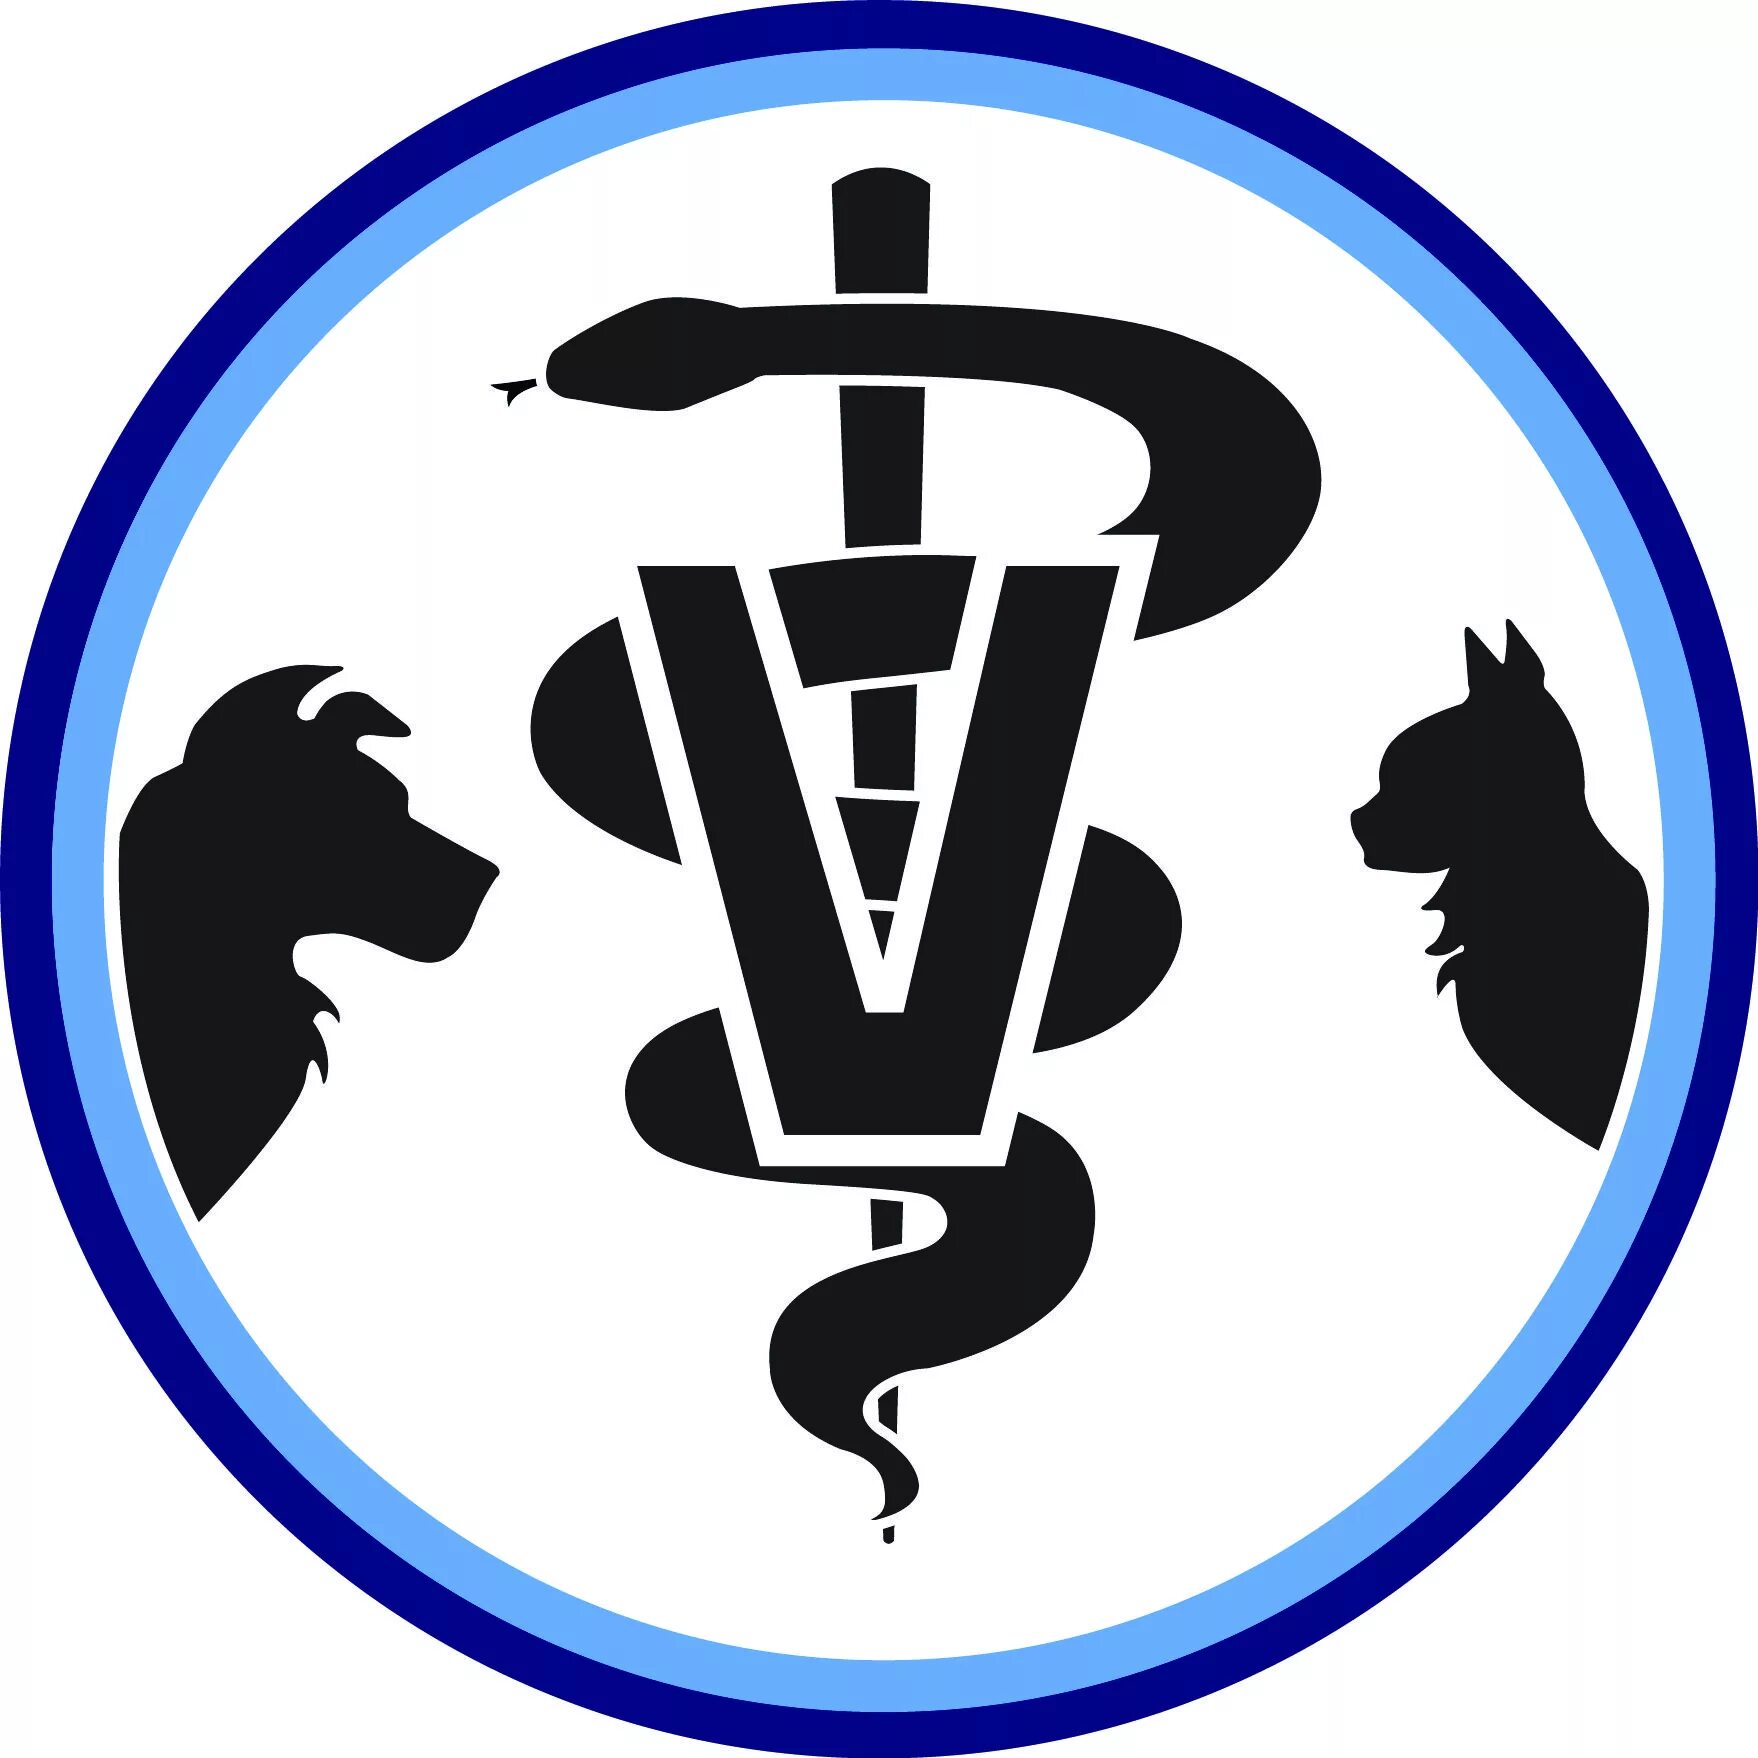 Ветеринарная грибоедова. Ветеринарный символ. Эмблема ветеринара. Эмблема ветеринарной службы. Значок ветеринарной медицины.